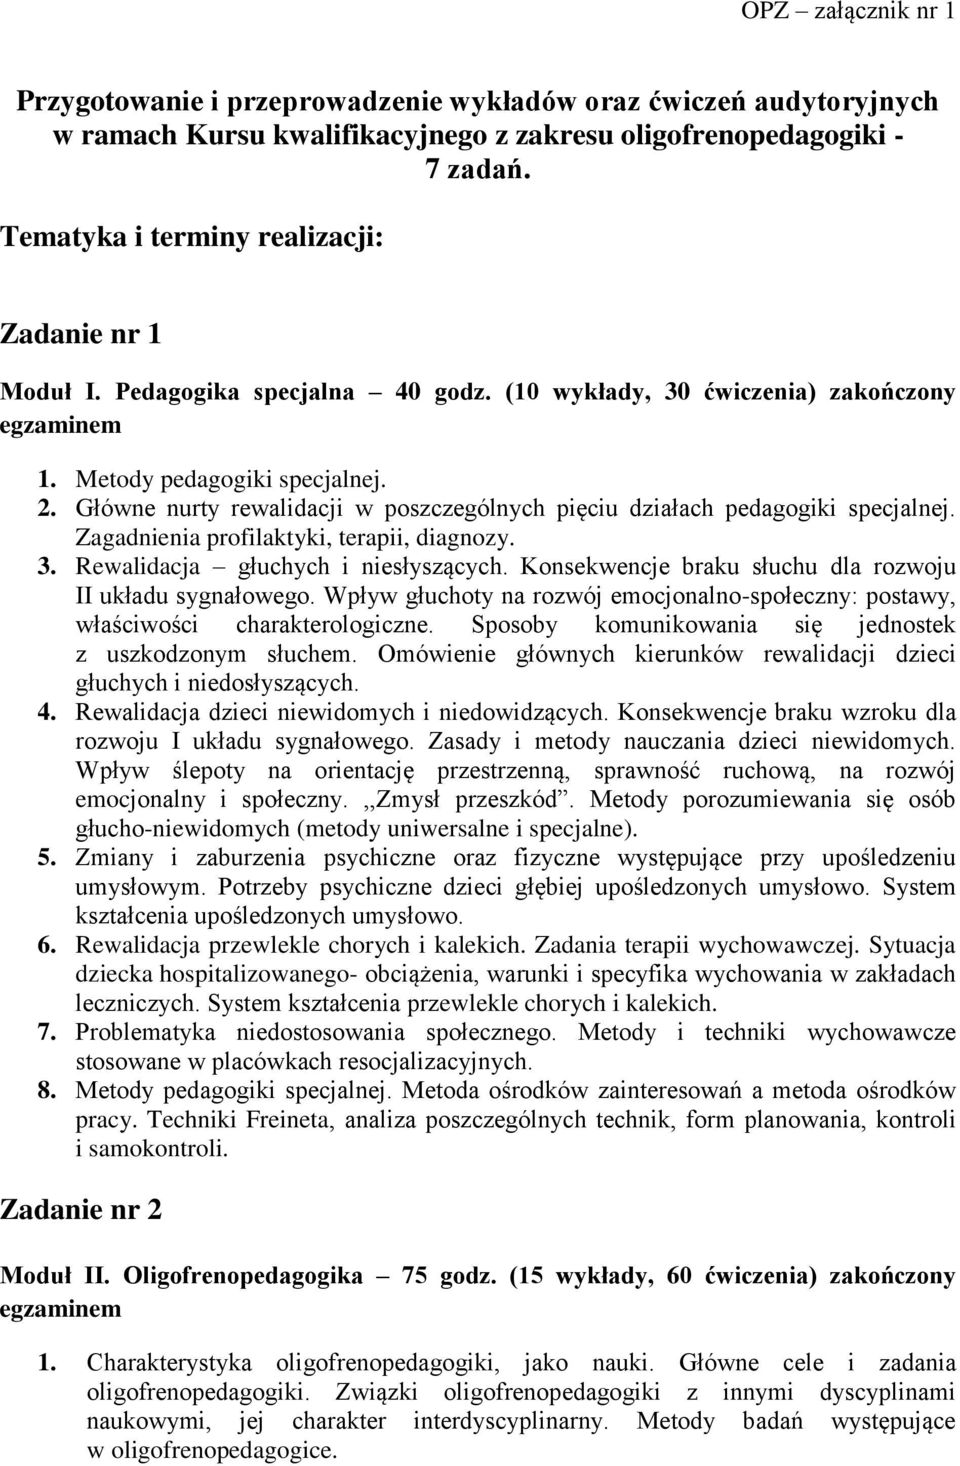 Przygotowanie i przeprowadzenie wykładów oraz ćwiczeń audytoryjnych w  ramach Kursu kwalifikacyjnego z zakresu oligofrenopedagogiki - 7 zadań. -  PDF Darmowe pobieranie